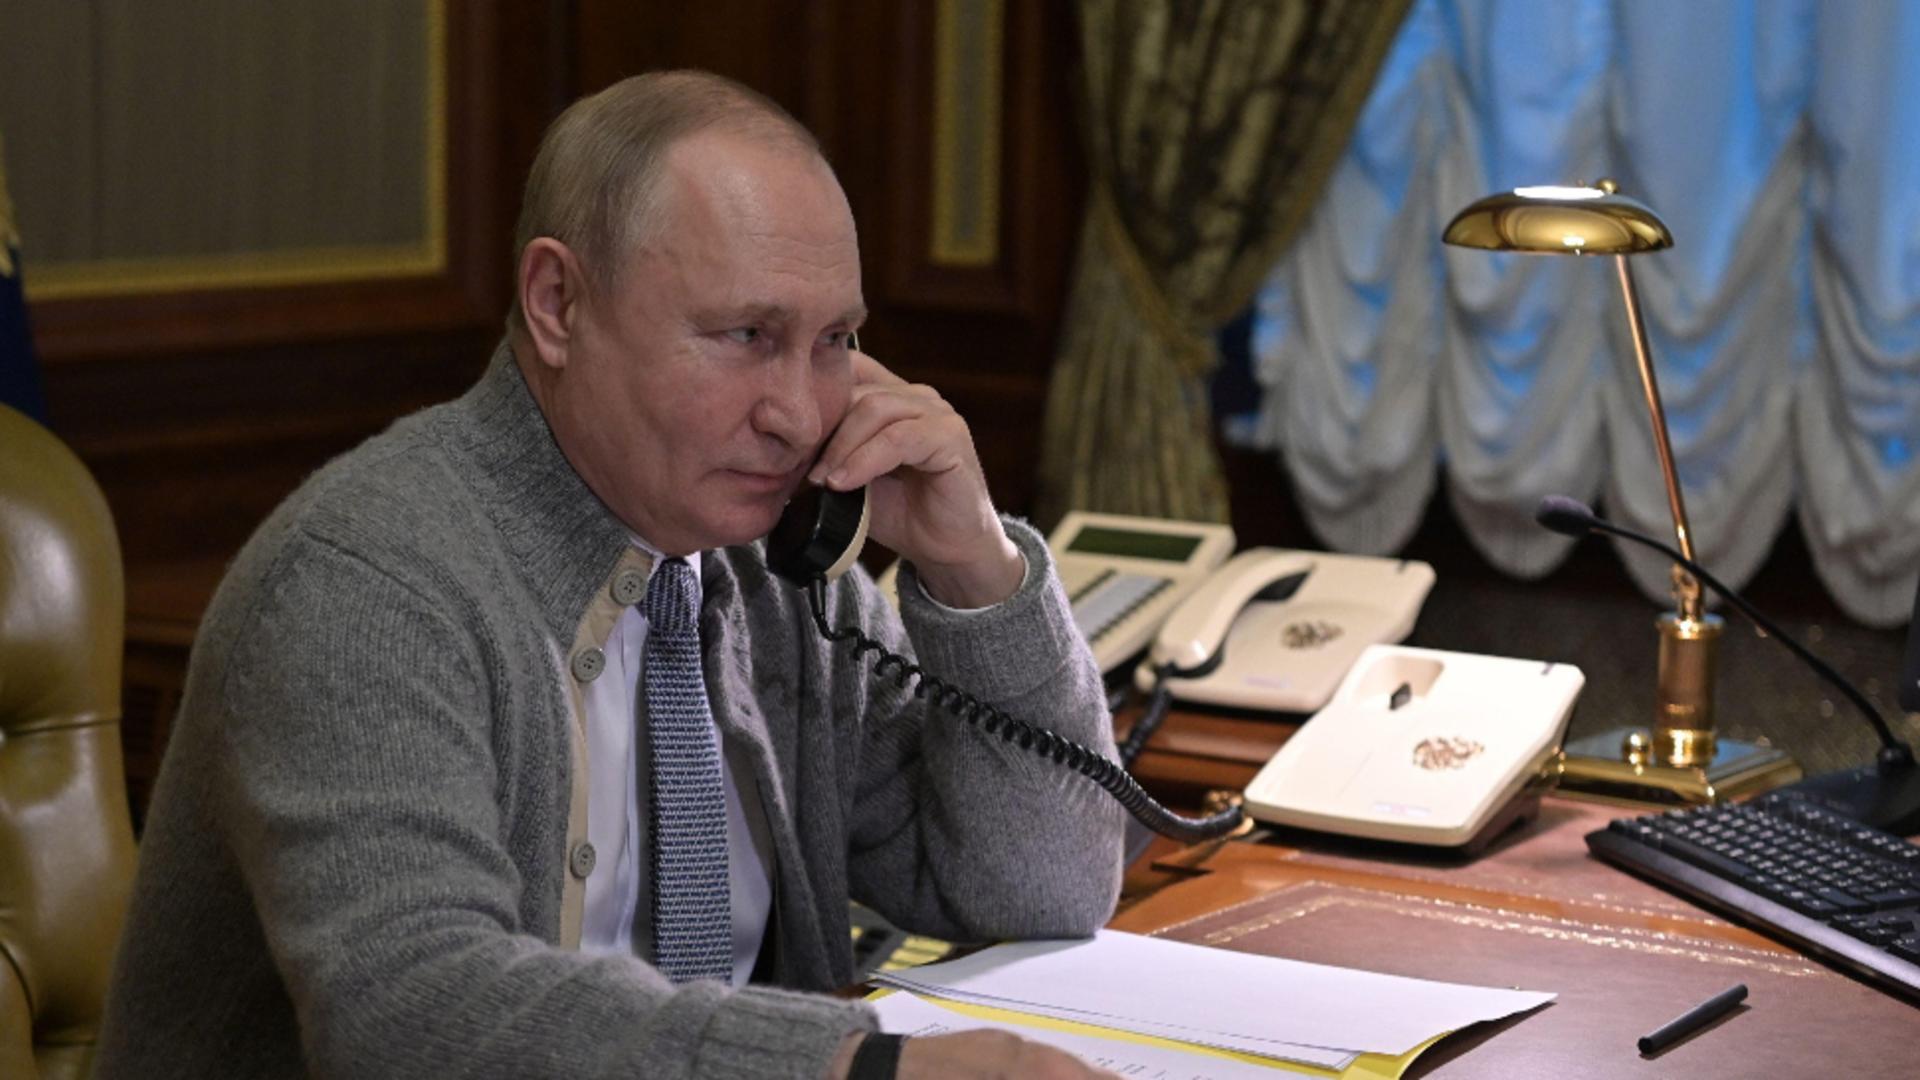 Vladimir Putin / Sursa foto: Profi Media